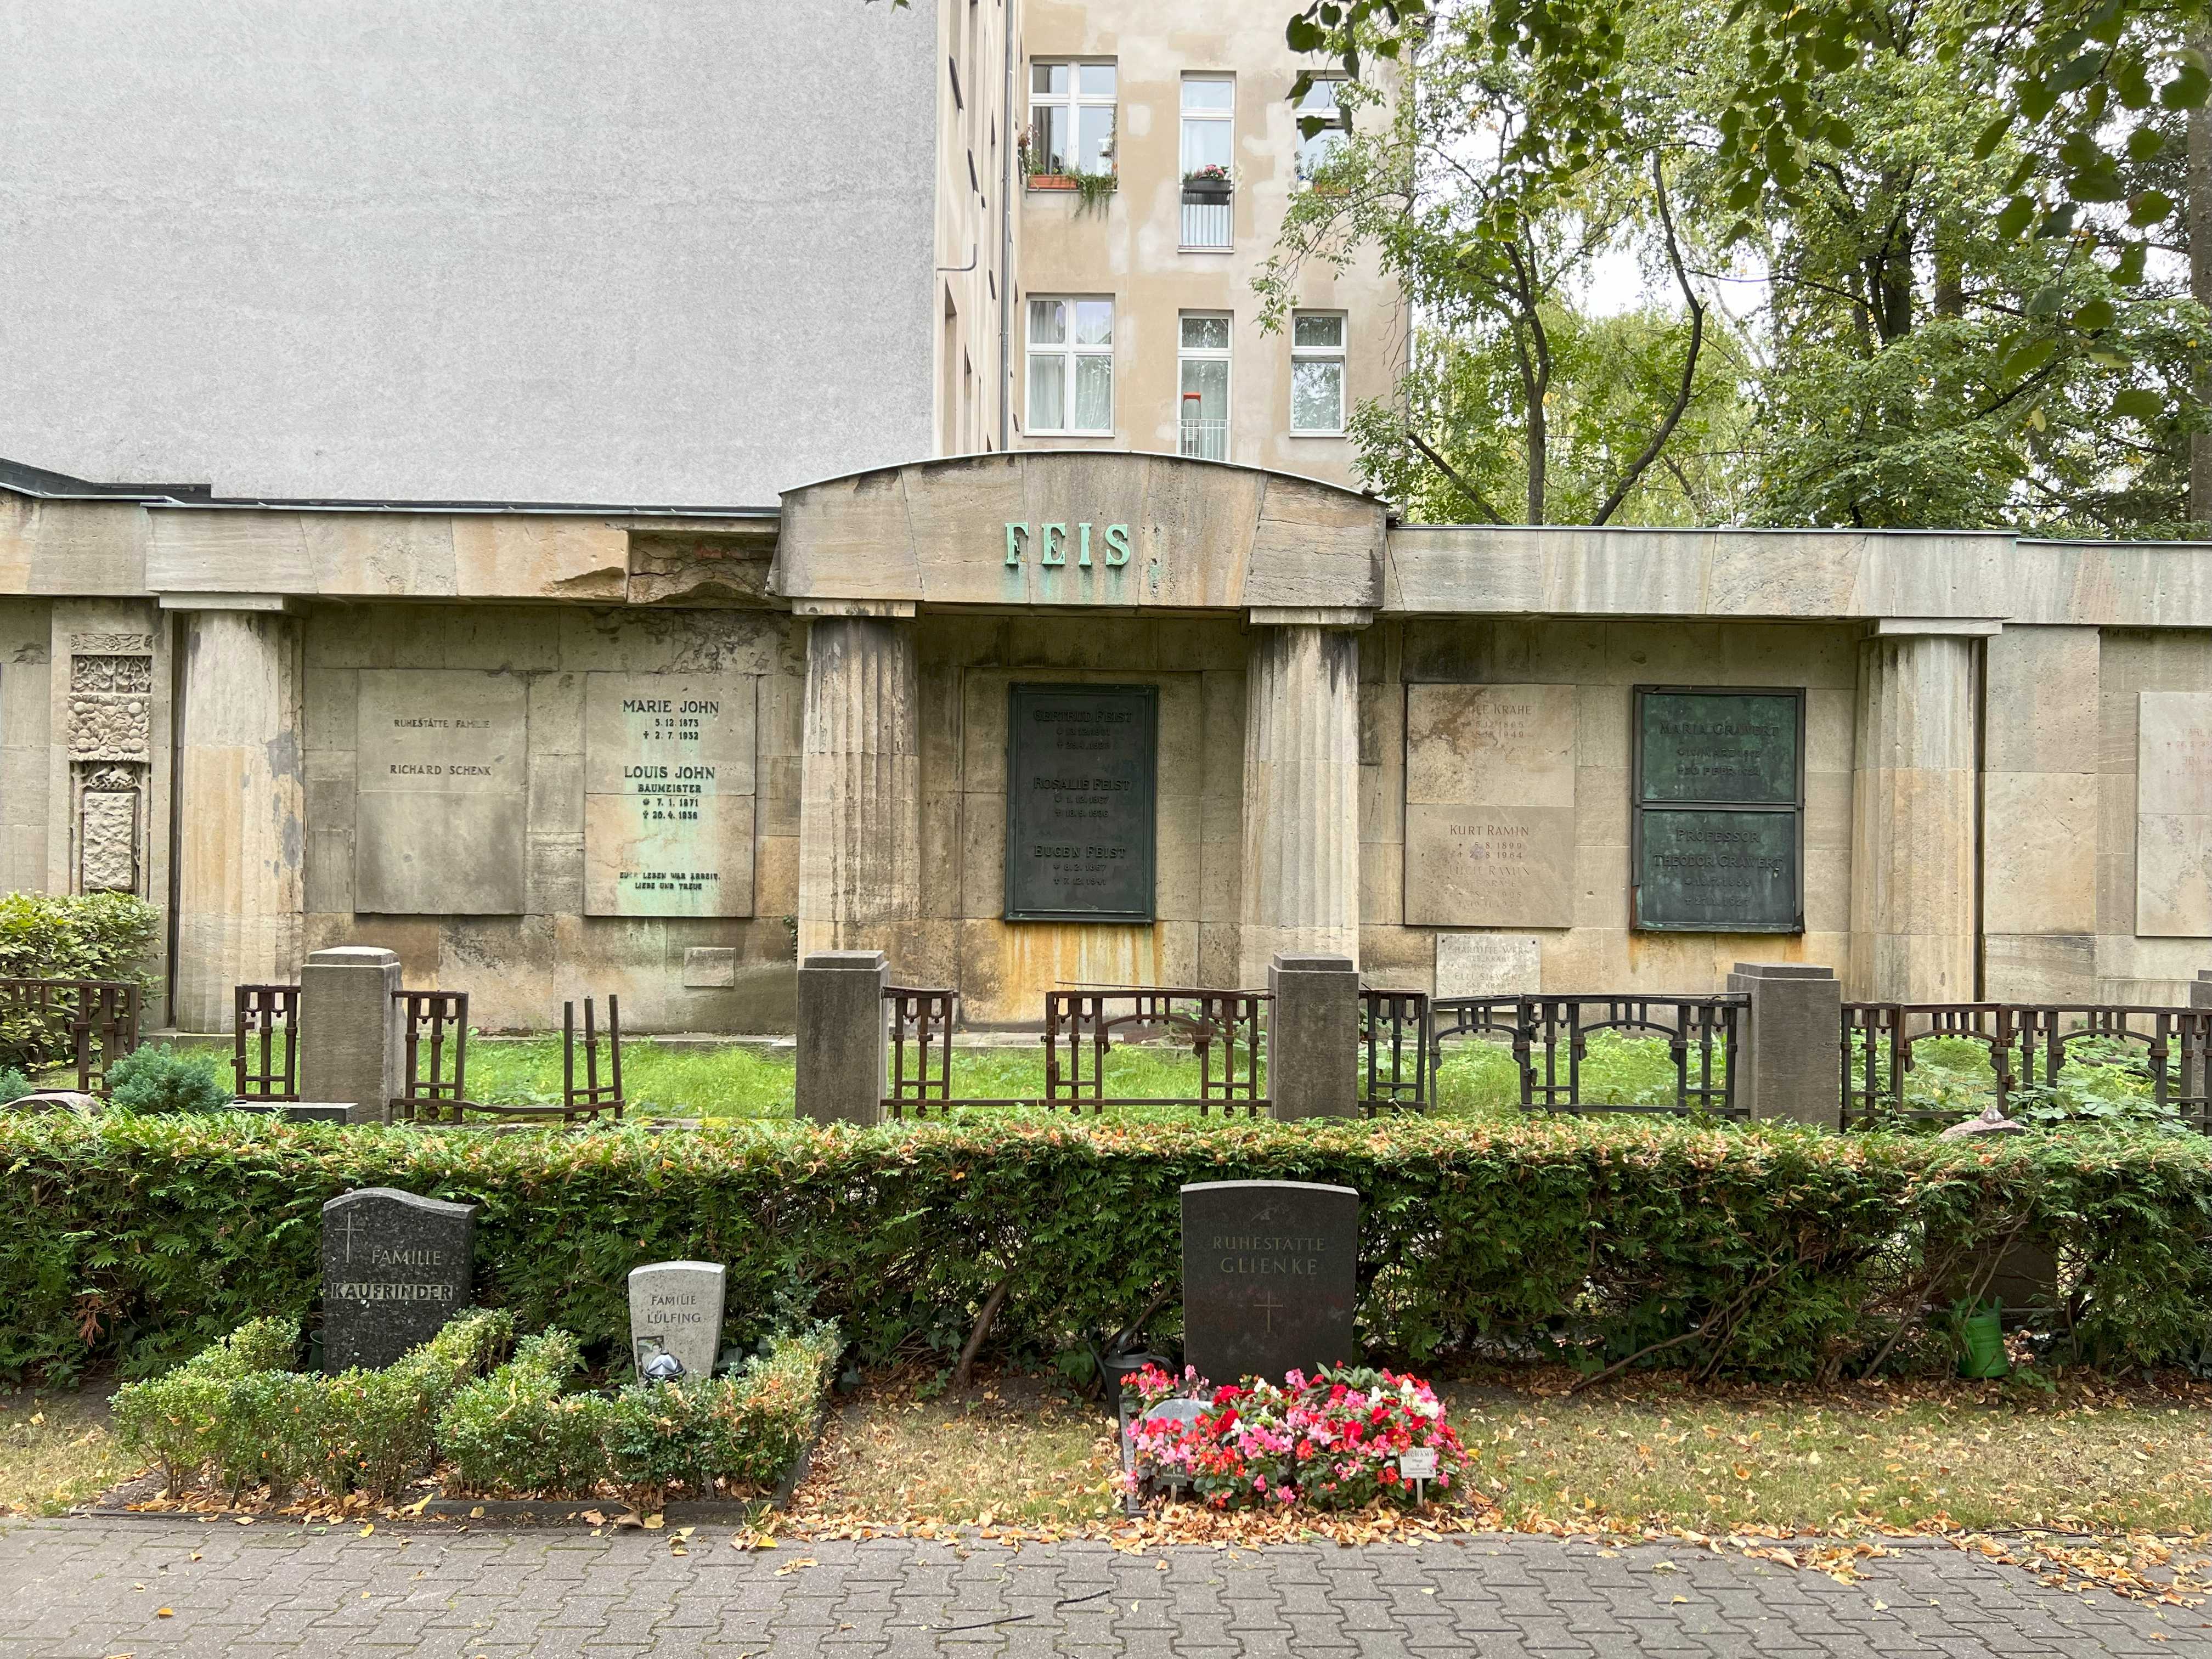 Grabstein Eugen Feist, Friedhof Wilmersdorf, Berlin